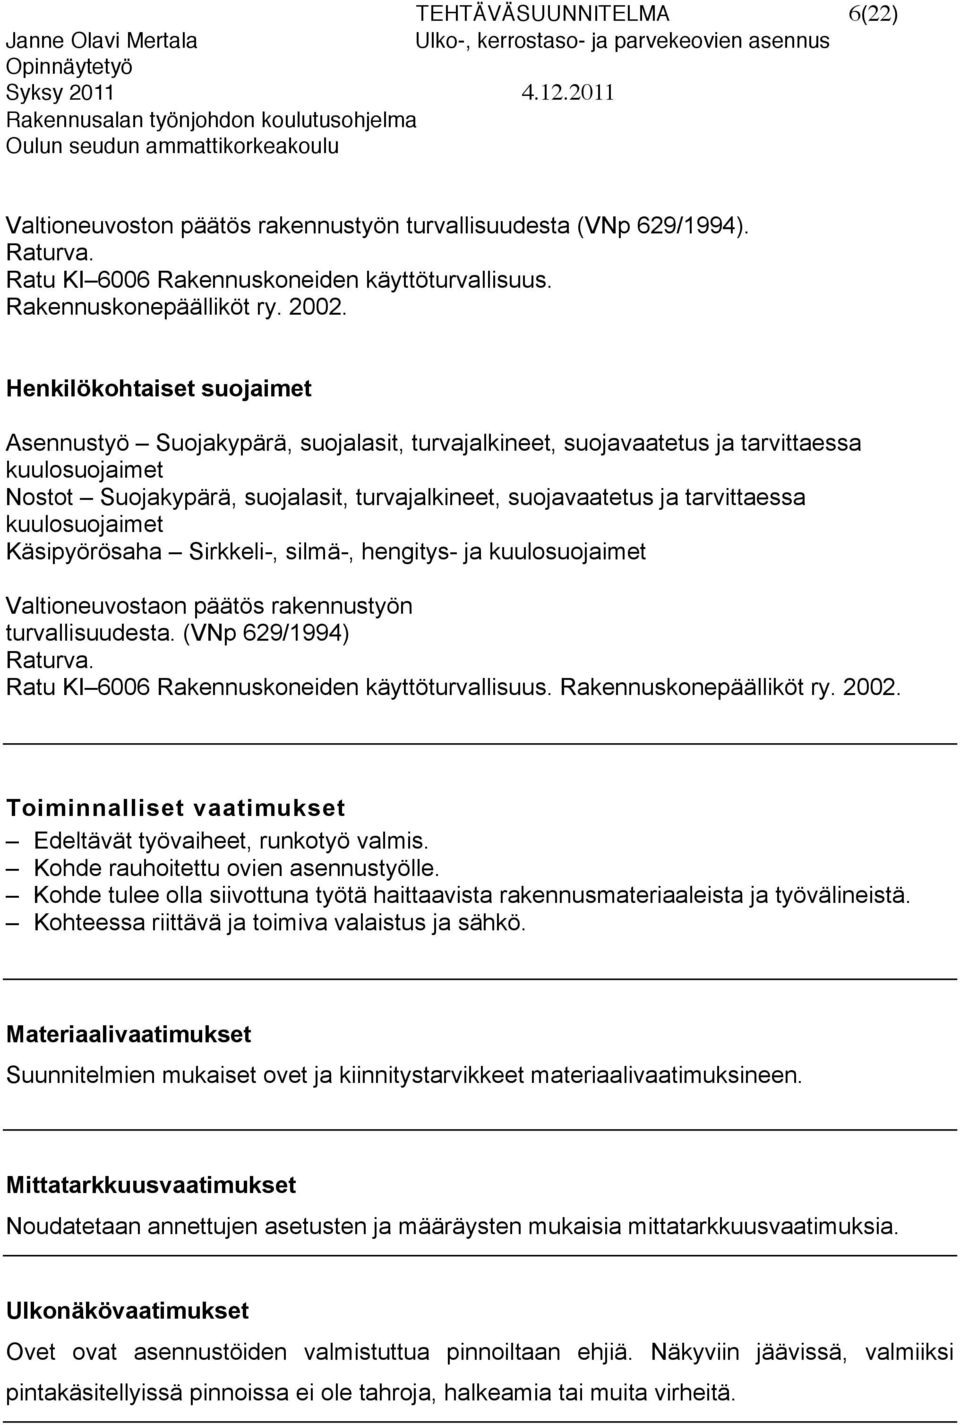 tarvittaessa kuulosuojaimet Käsipyörösaha Sirkkeli-, silmä-, hengitys- ja kuulosuojaimet Valtioneuvostaon päätös rakennustyön turvallisuudesta. (VNp 629/1994) Raturva.